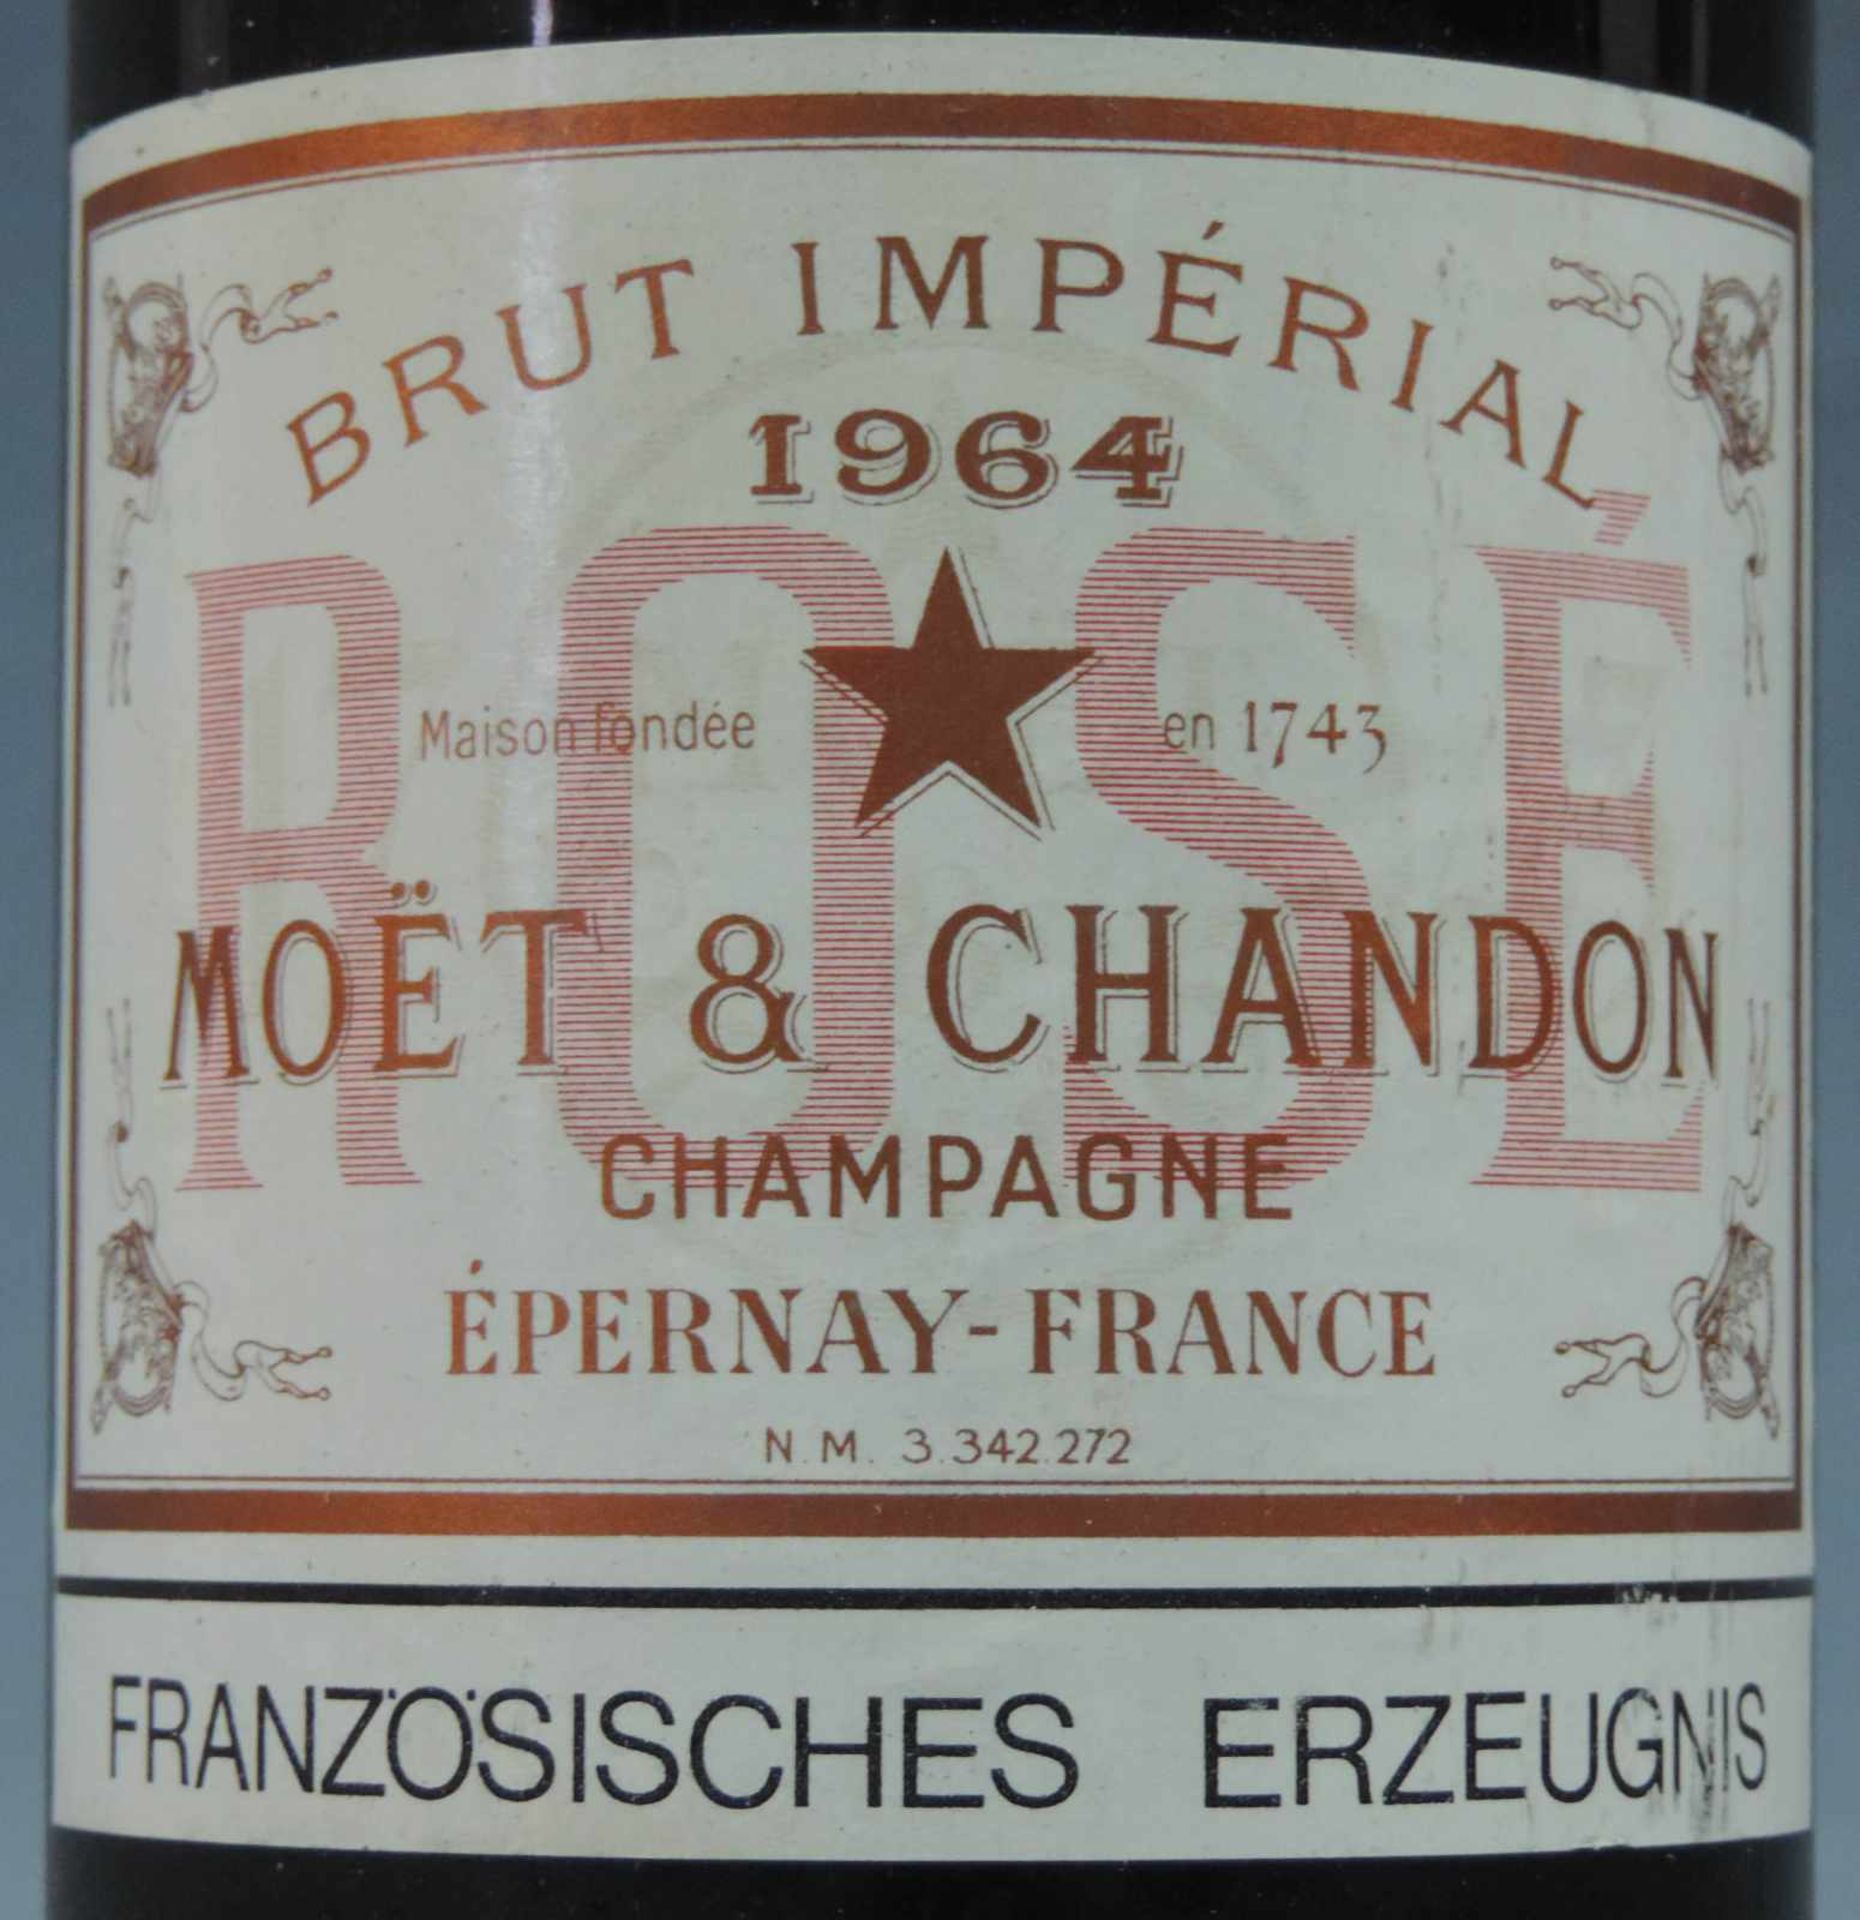 1964 Moet & Chandon Champagne Brut Imperial. Eine ganze Flasche Campangner Frankreich weiß. - Image 2 of 6